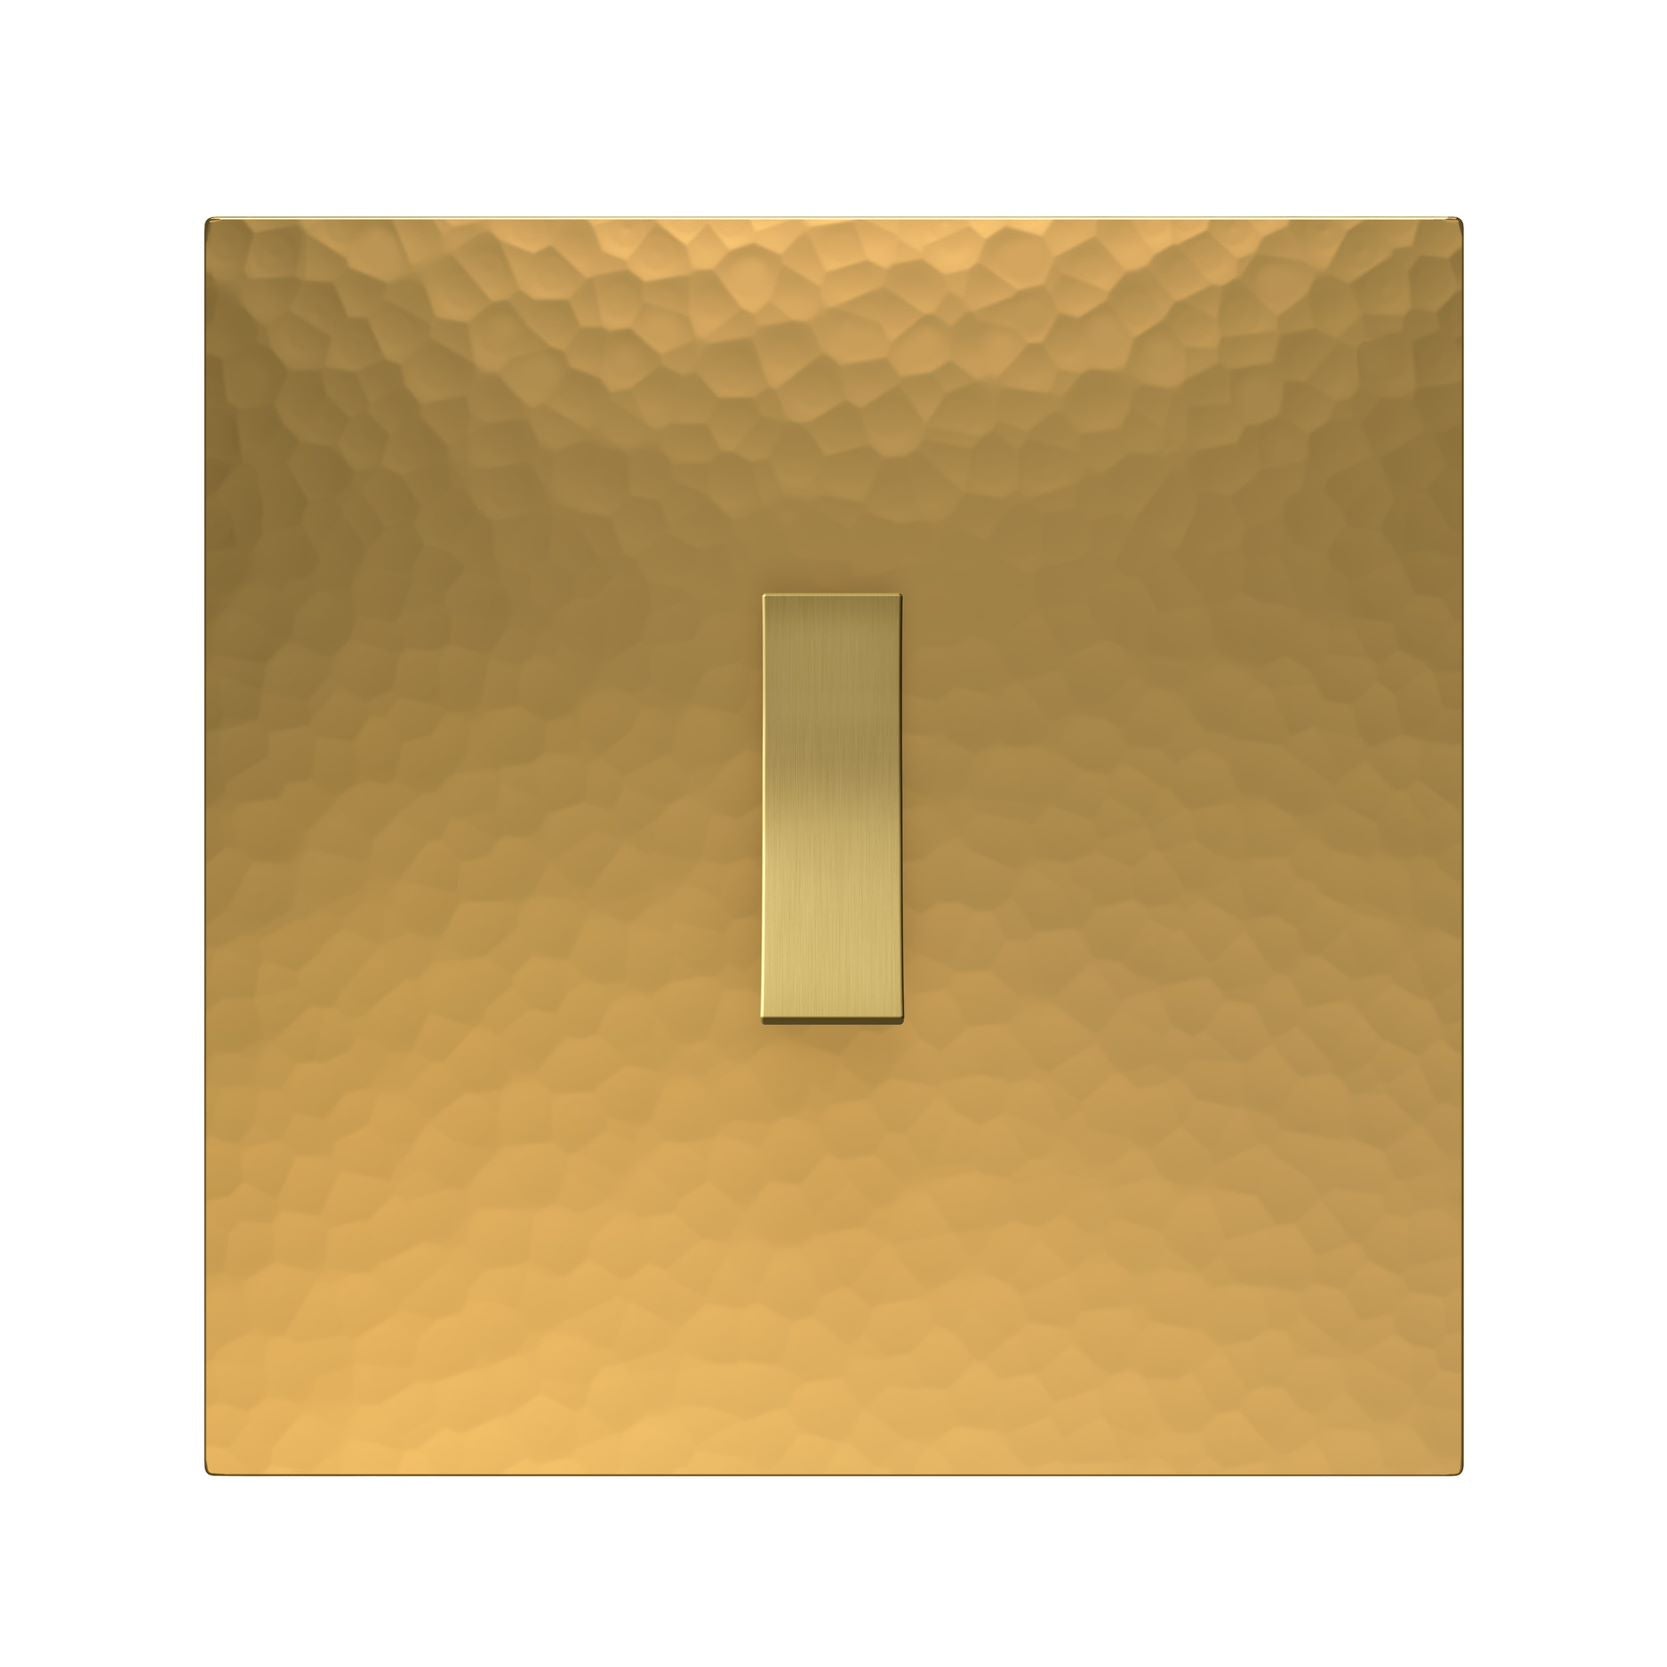 Bridge Switch in Martelé Golden Brass with a Golden Knob